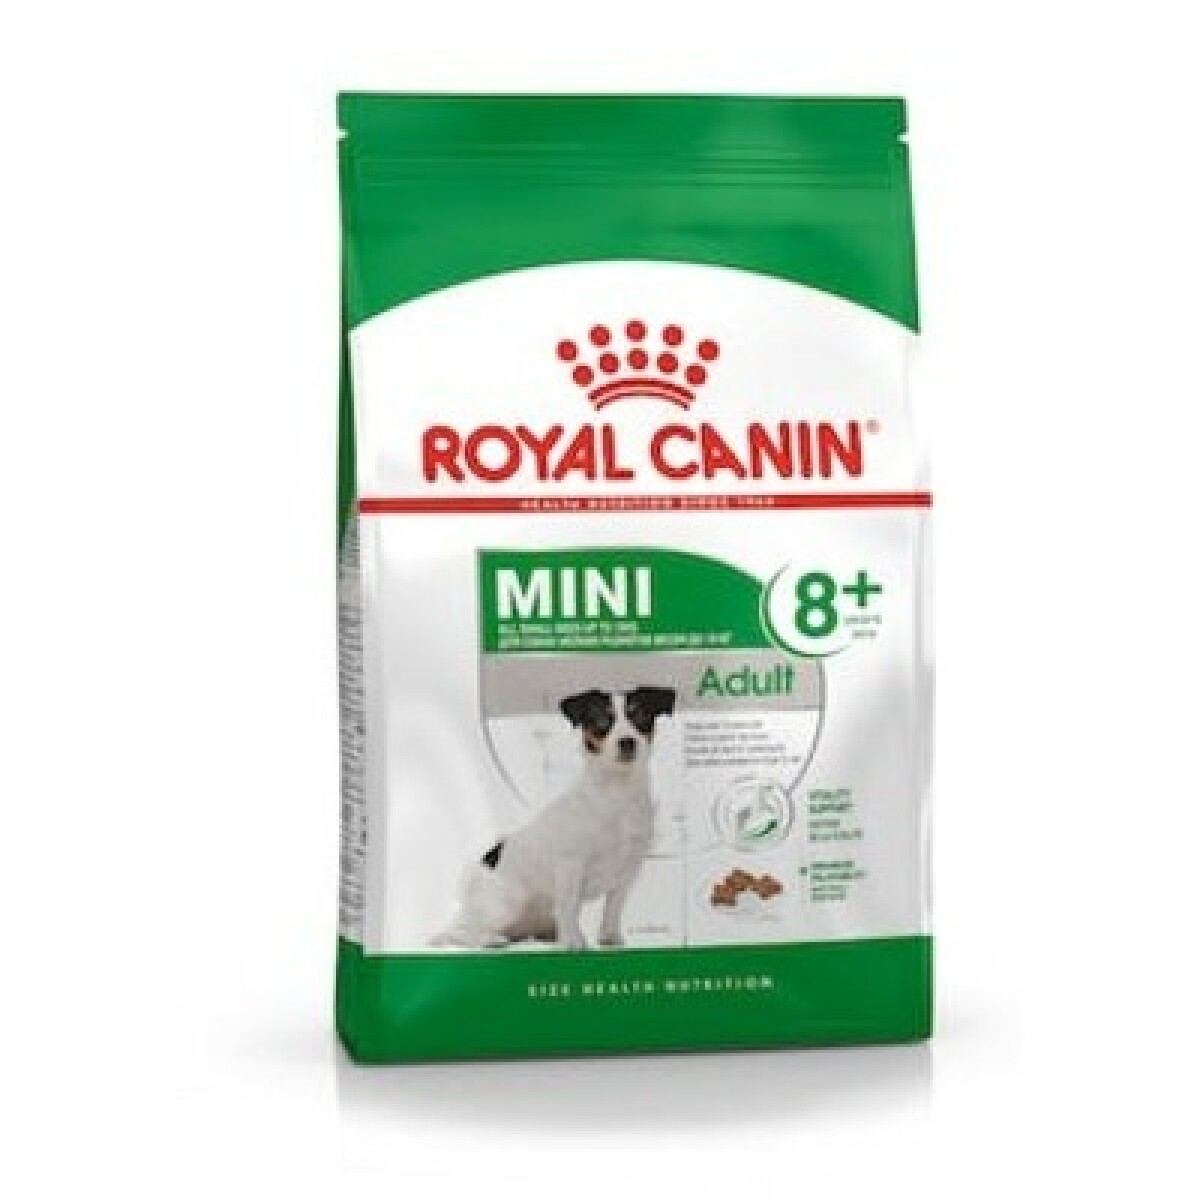 ROYAL CANIN MINI ADULT +8 1 KG - Unica 